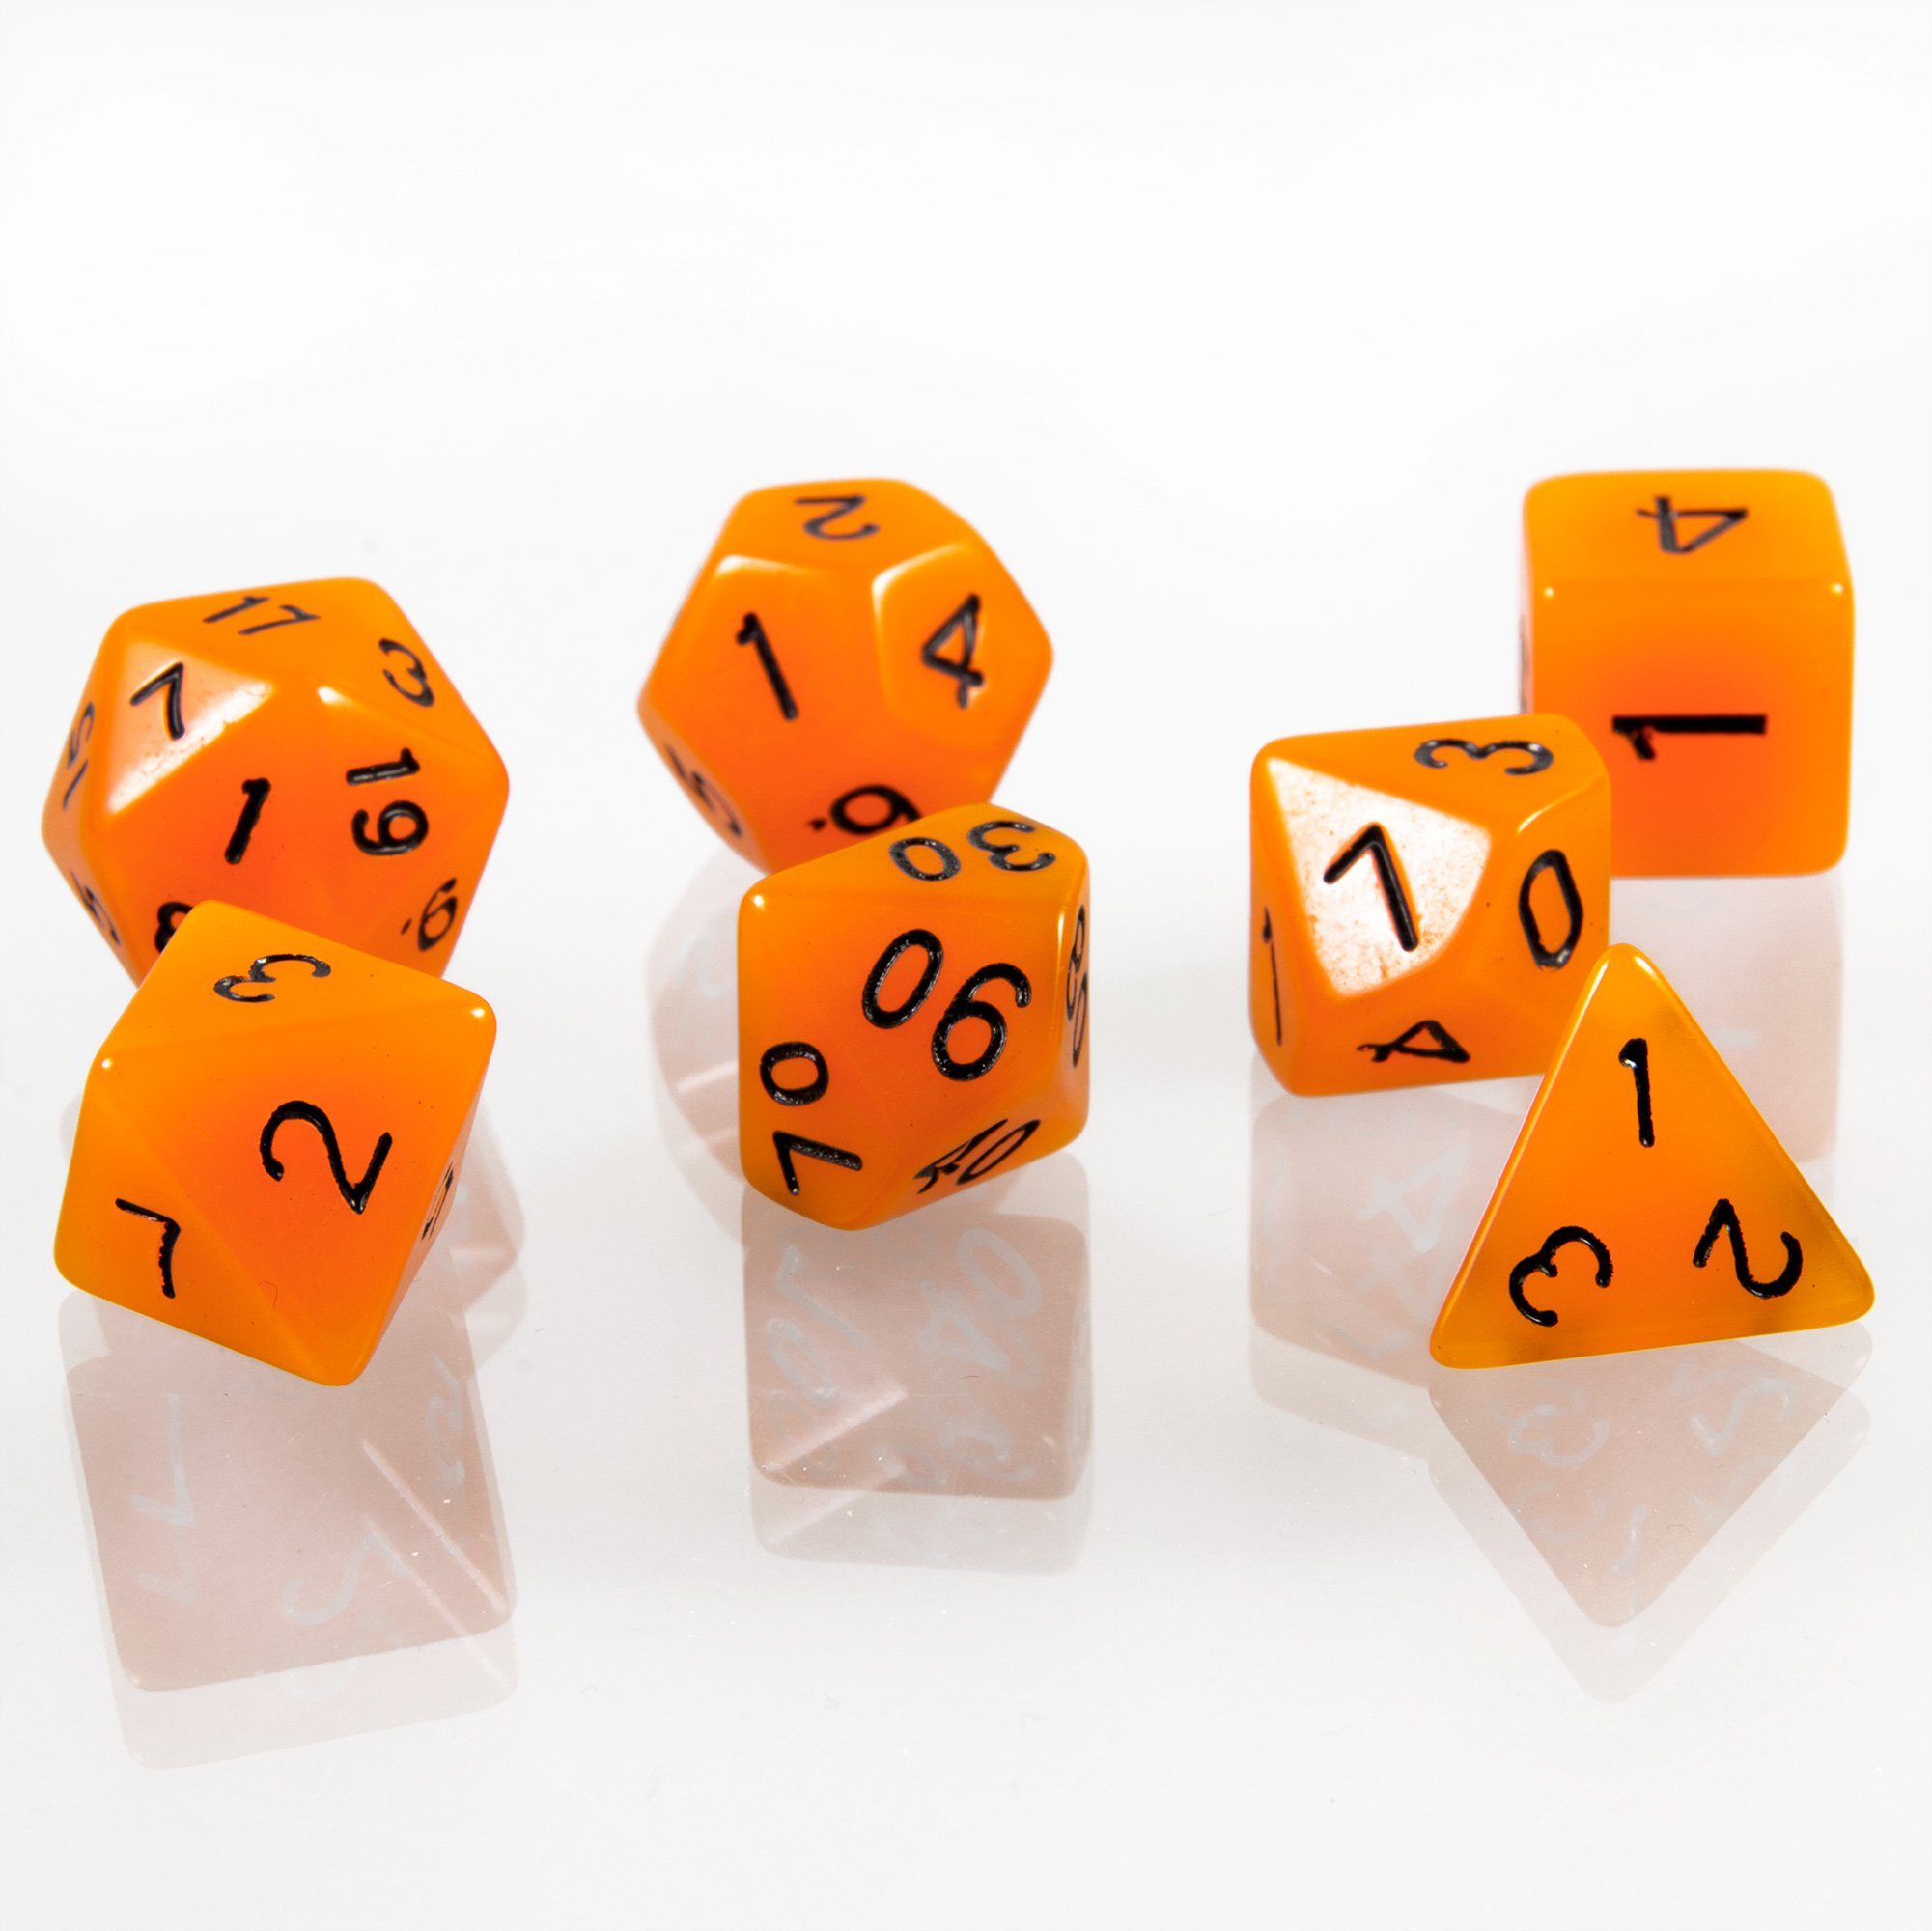 SHIBBY Spielesammlung, 7 polyedrische leuchtende DND Würfel mit Beutel Orange